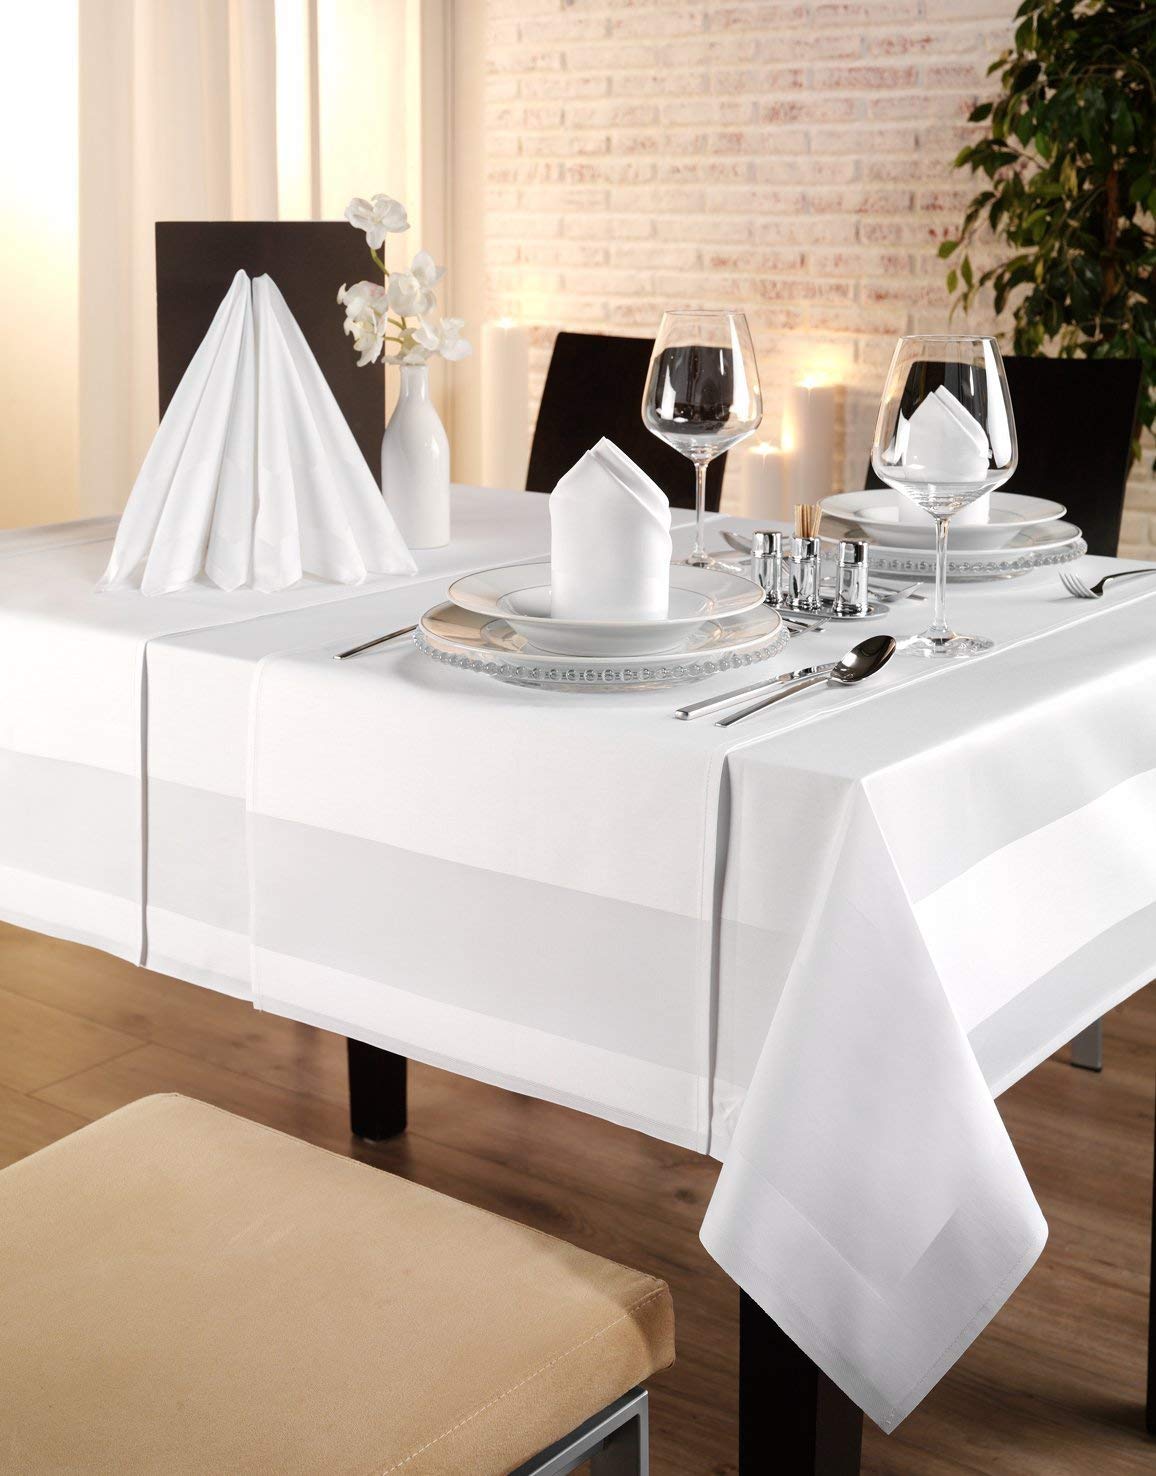 Gastro Uzal Tischtücher, Mitteldecke weiß 10 Stück, Tischset Damast, Gastronomie Tischdecken, Stoff Tischset, weiß mit Atlaskante (100x100 cm)…